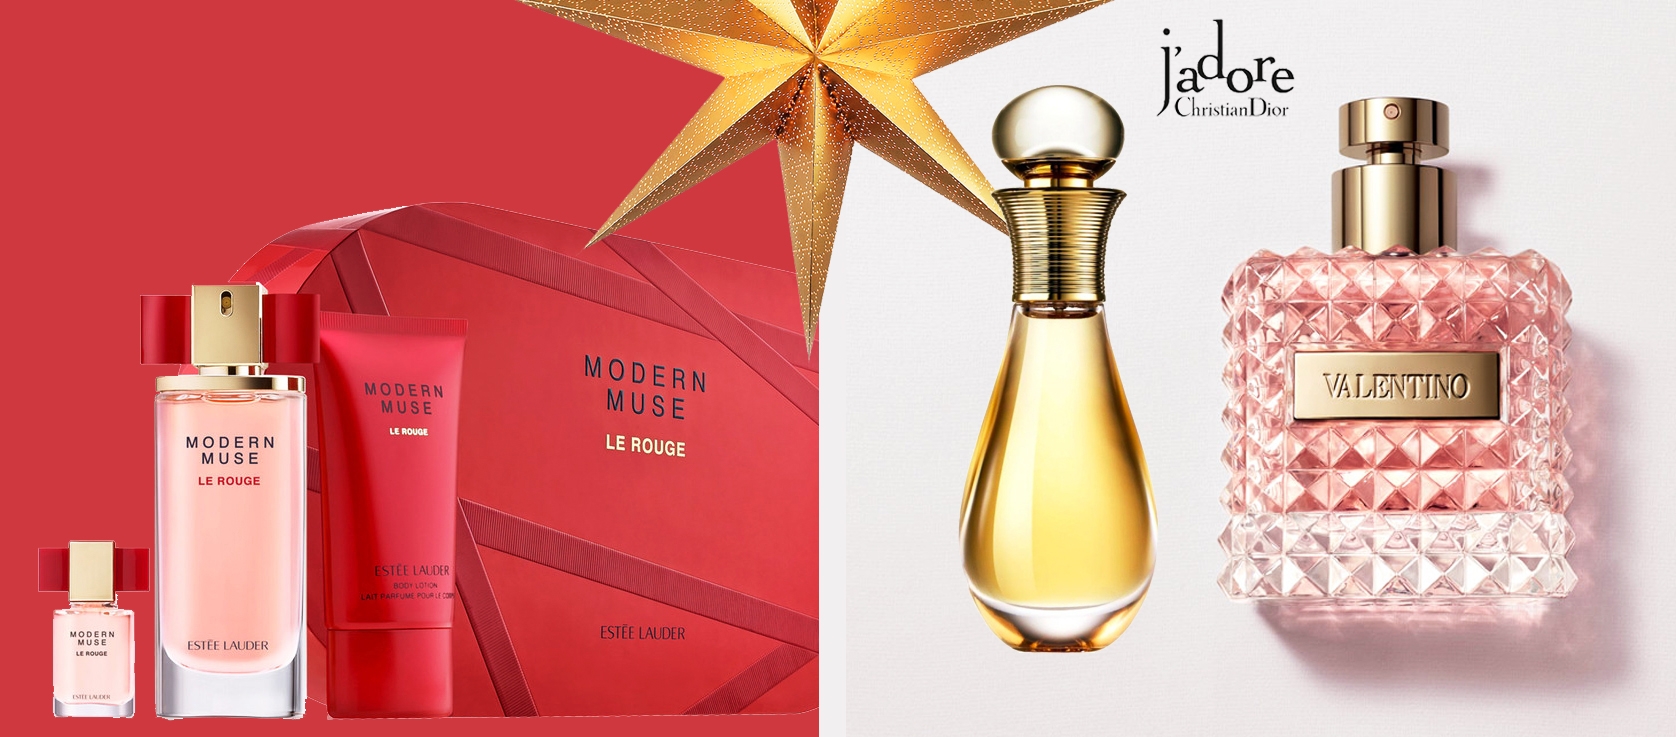 Prezenty świąteczne, Prezenty Boże Narodzenie 2015, Jadore Touche de Parfum, Estee Lauder Modern Muse Le Rouge, Valentino Donna, perfumy na prezent